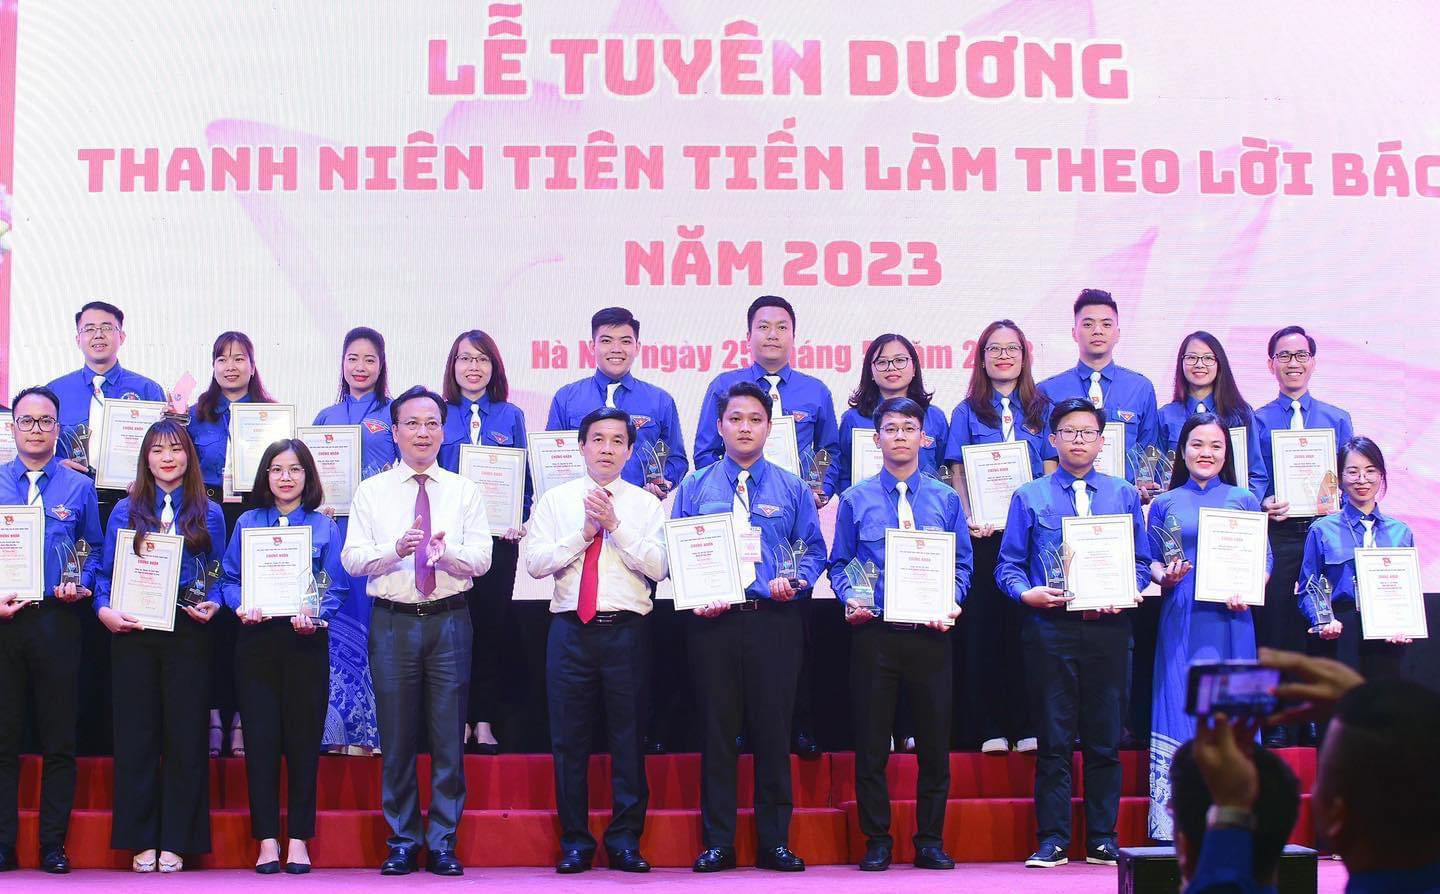 Đoàn TNCS Hồ Chí Minh Viện Hàn lâm KHCNVN tham dự Liên hoan tuyên dương thanh niên tiên tiến làm theo Lời Bác của Đoàn Khối các cơ quan Trung ương năm 2023